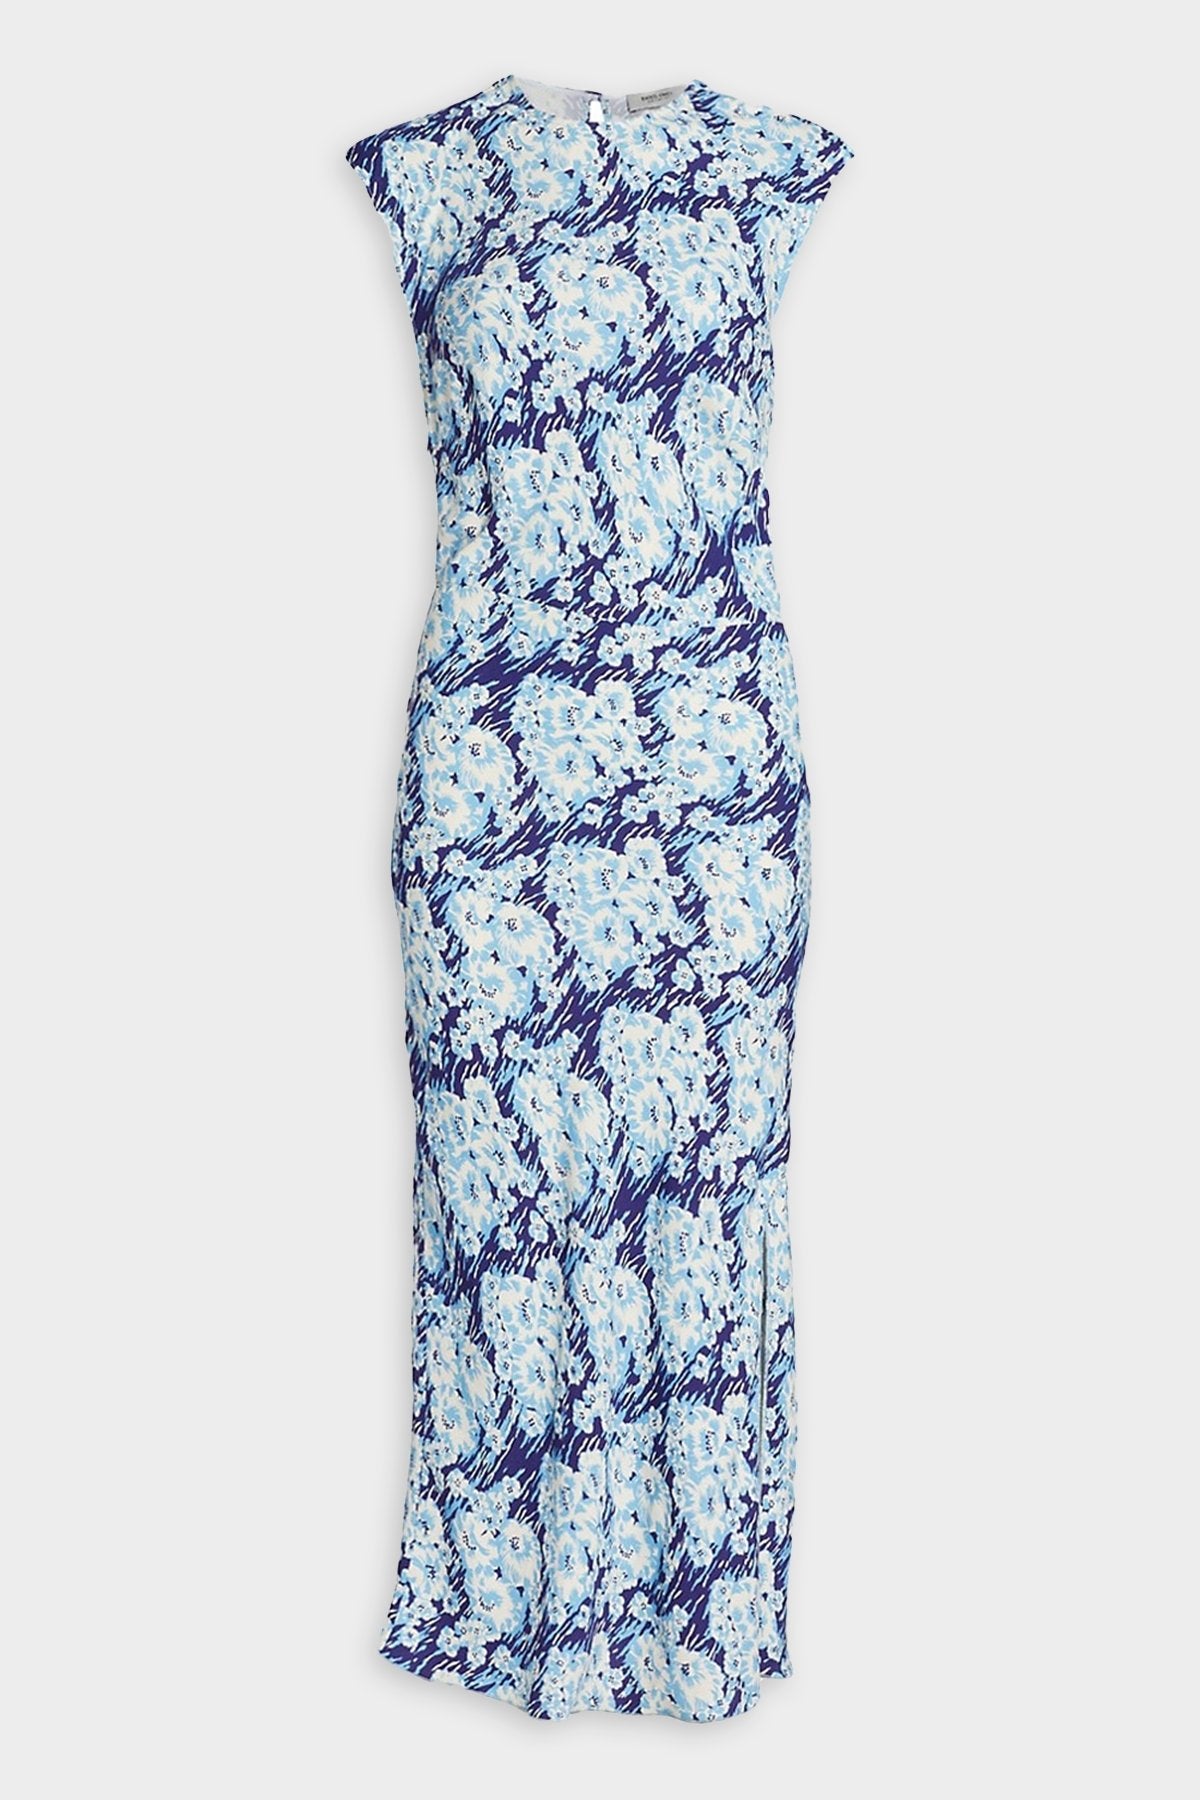 Clandestine Dress in Blue Multi - shop-olivia.com